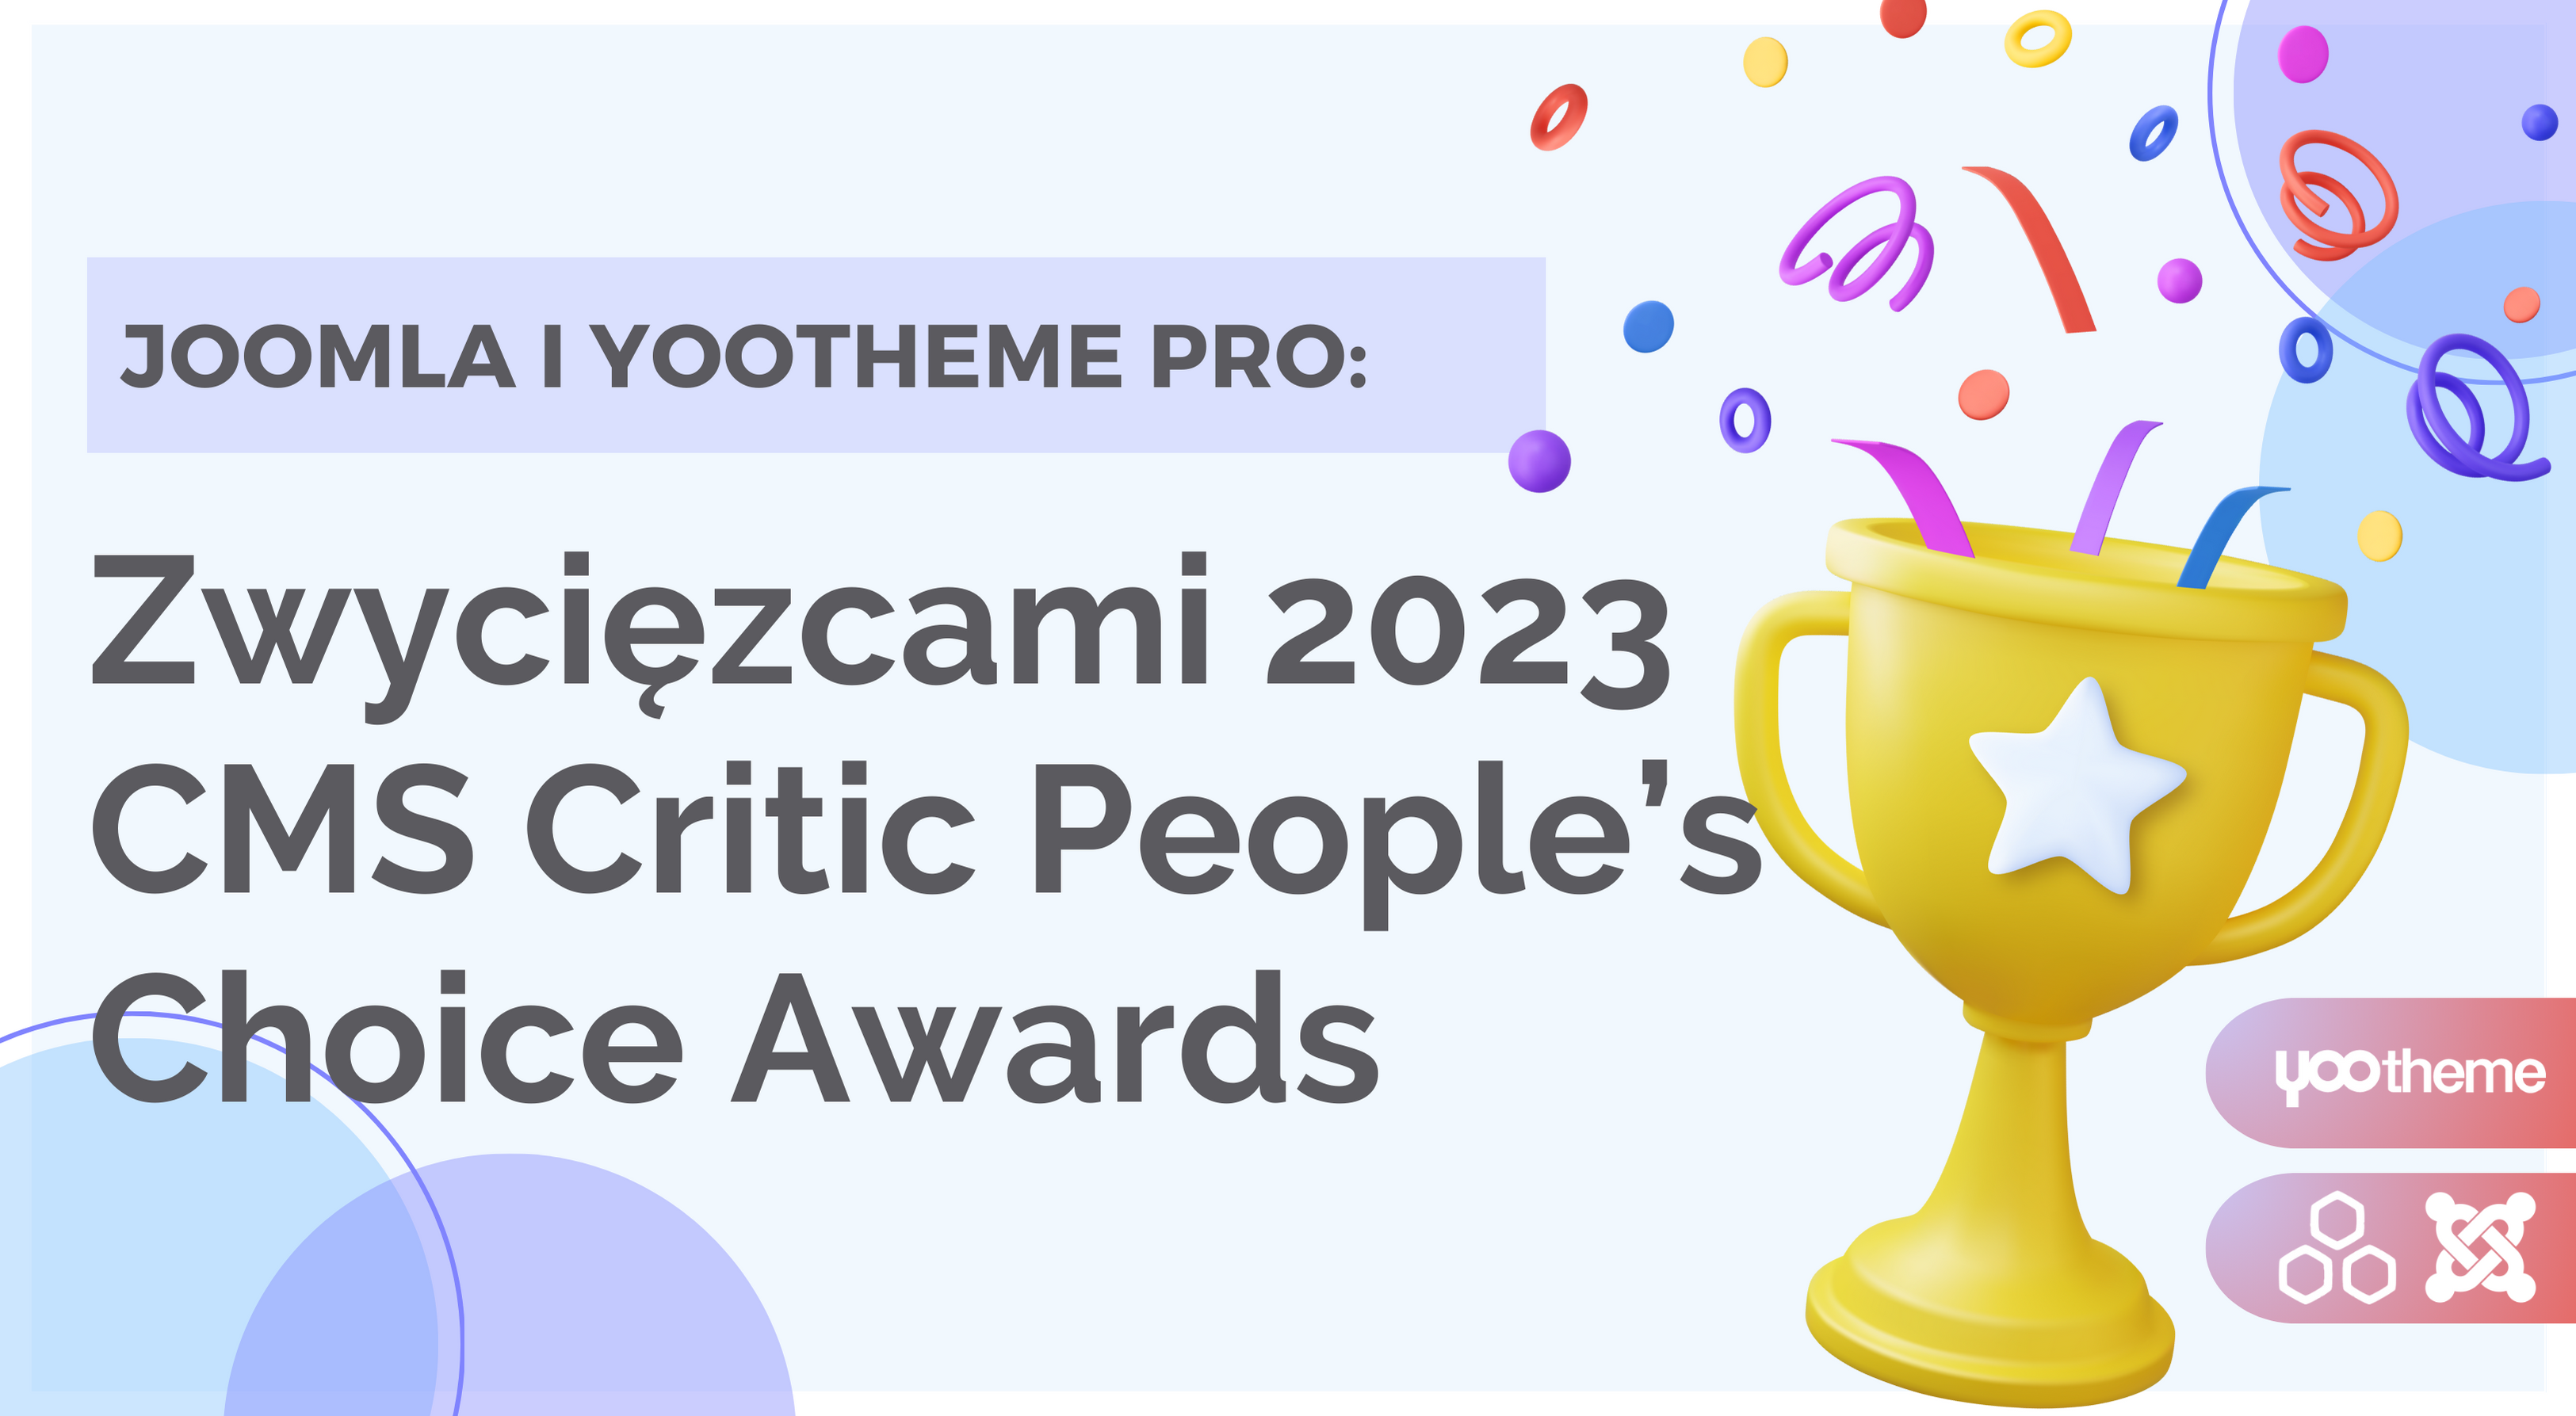 Zwycięzcy 2023 CMS Critic People’s Choice Awards